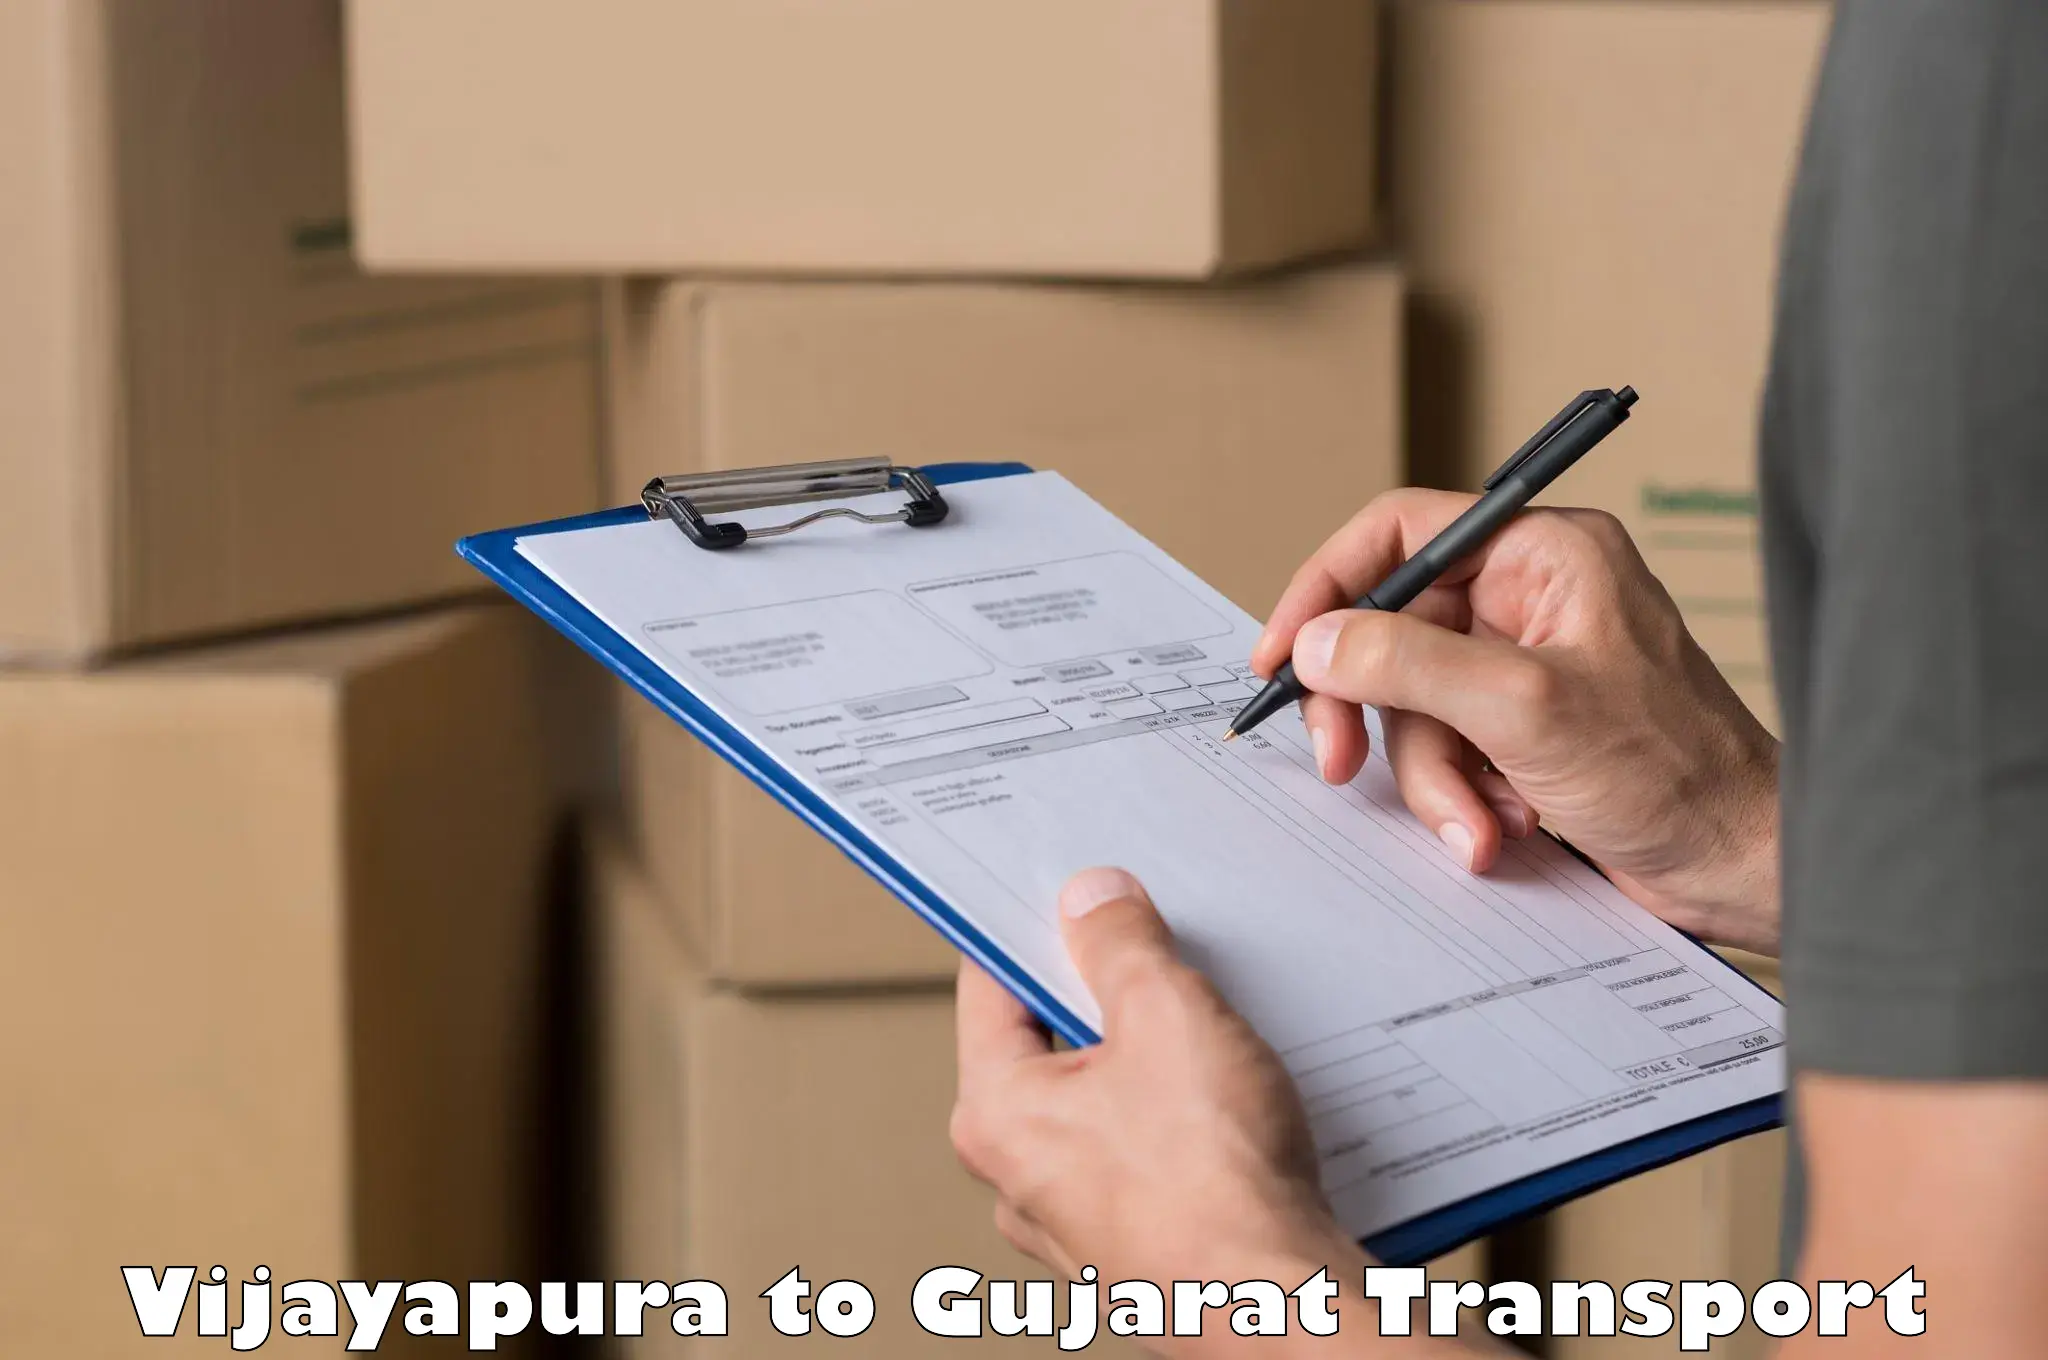 Daily parcel service transport Vijayapura to Deesa